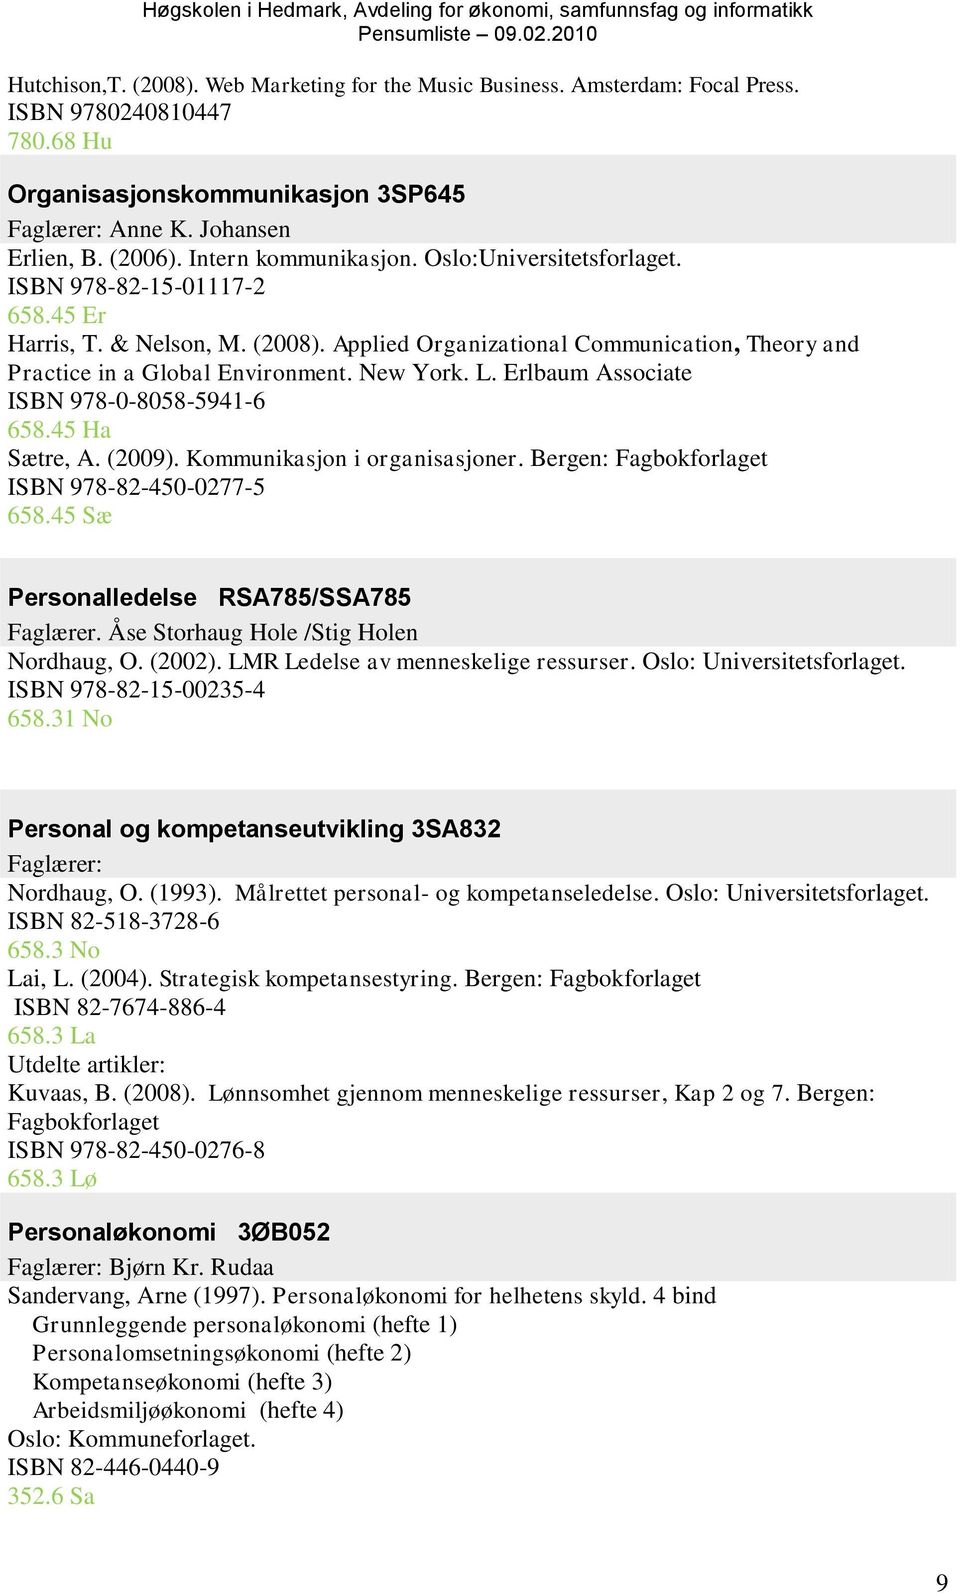 New York. L. Erlbaum Associate ISBN 978-0-8058-5941-6 658.45 Ha Sætre, A. (2009). Kommunikasjon i organisasjoner. Bergen: Fagbokforlaget ISBN 978-82-450-0277-5 658.